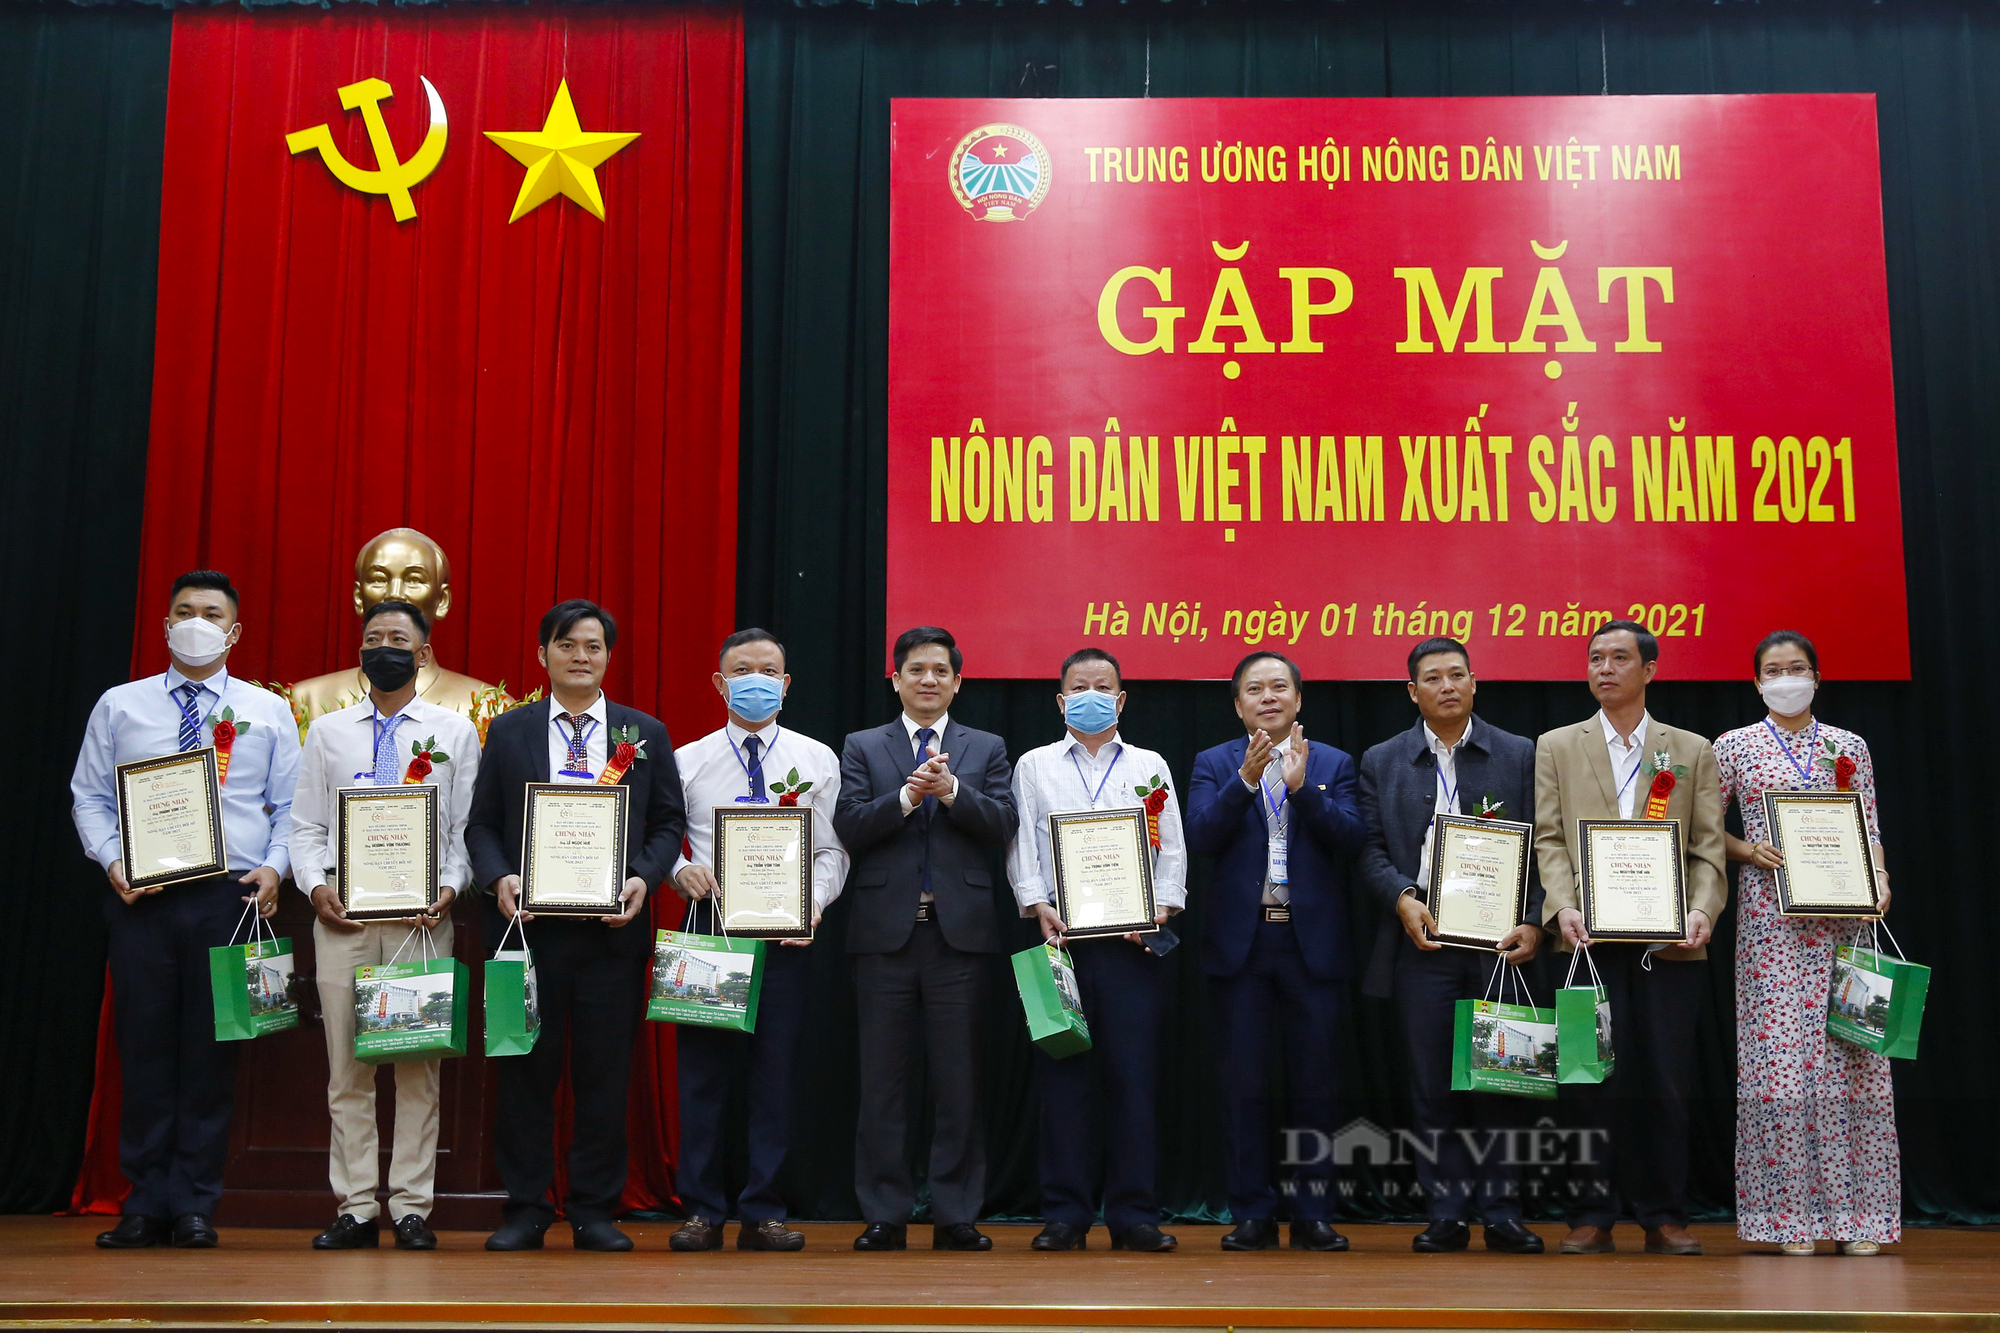 Ảnh: Thường trực Trung ương Hội Nông dân Việt Nam gặp mặt nông dân xuất sắc năm 2021 - Ảnh 10.